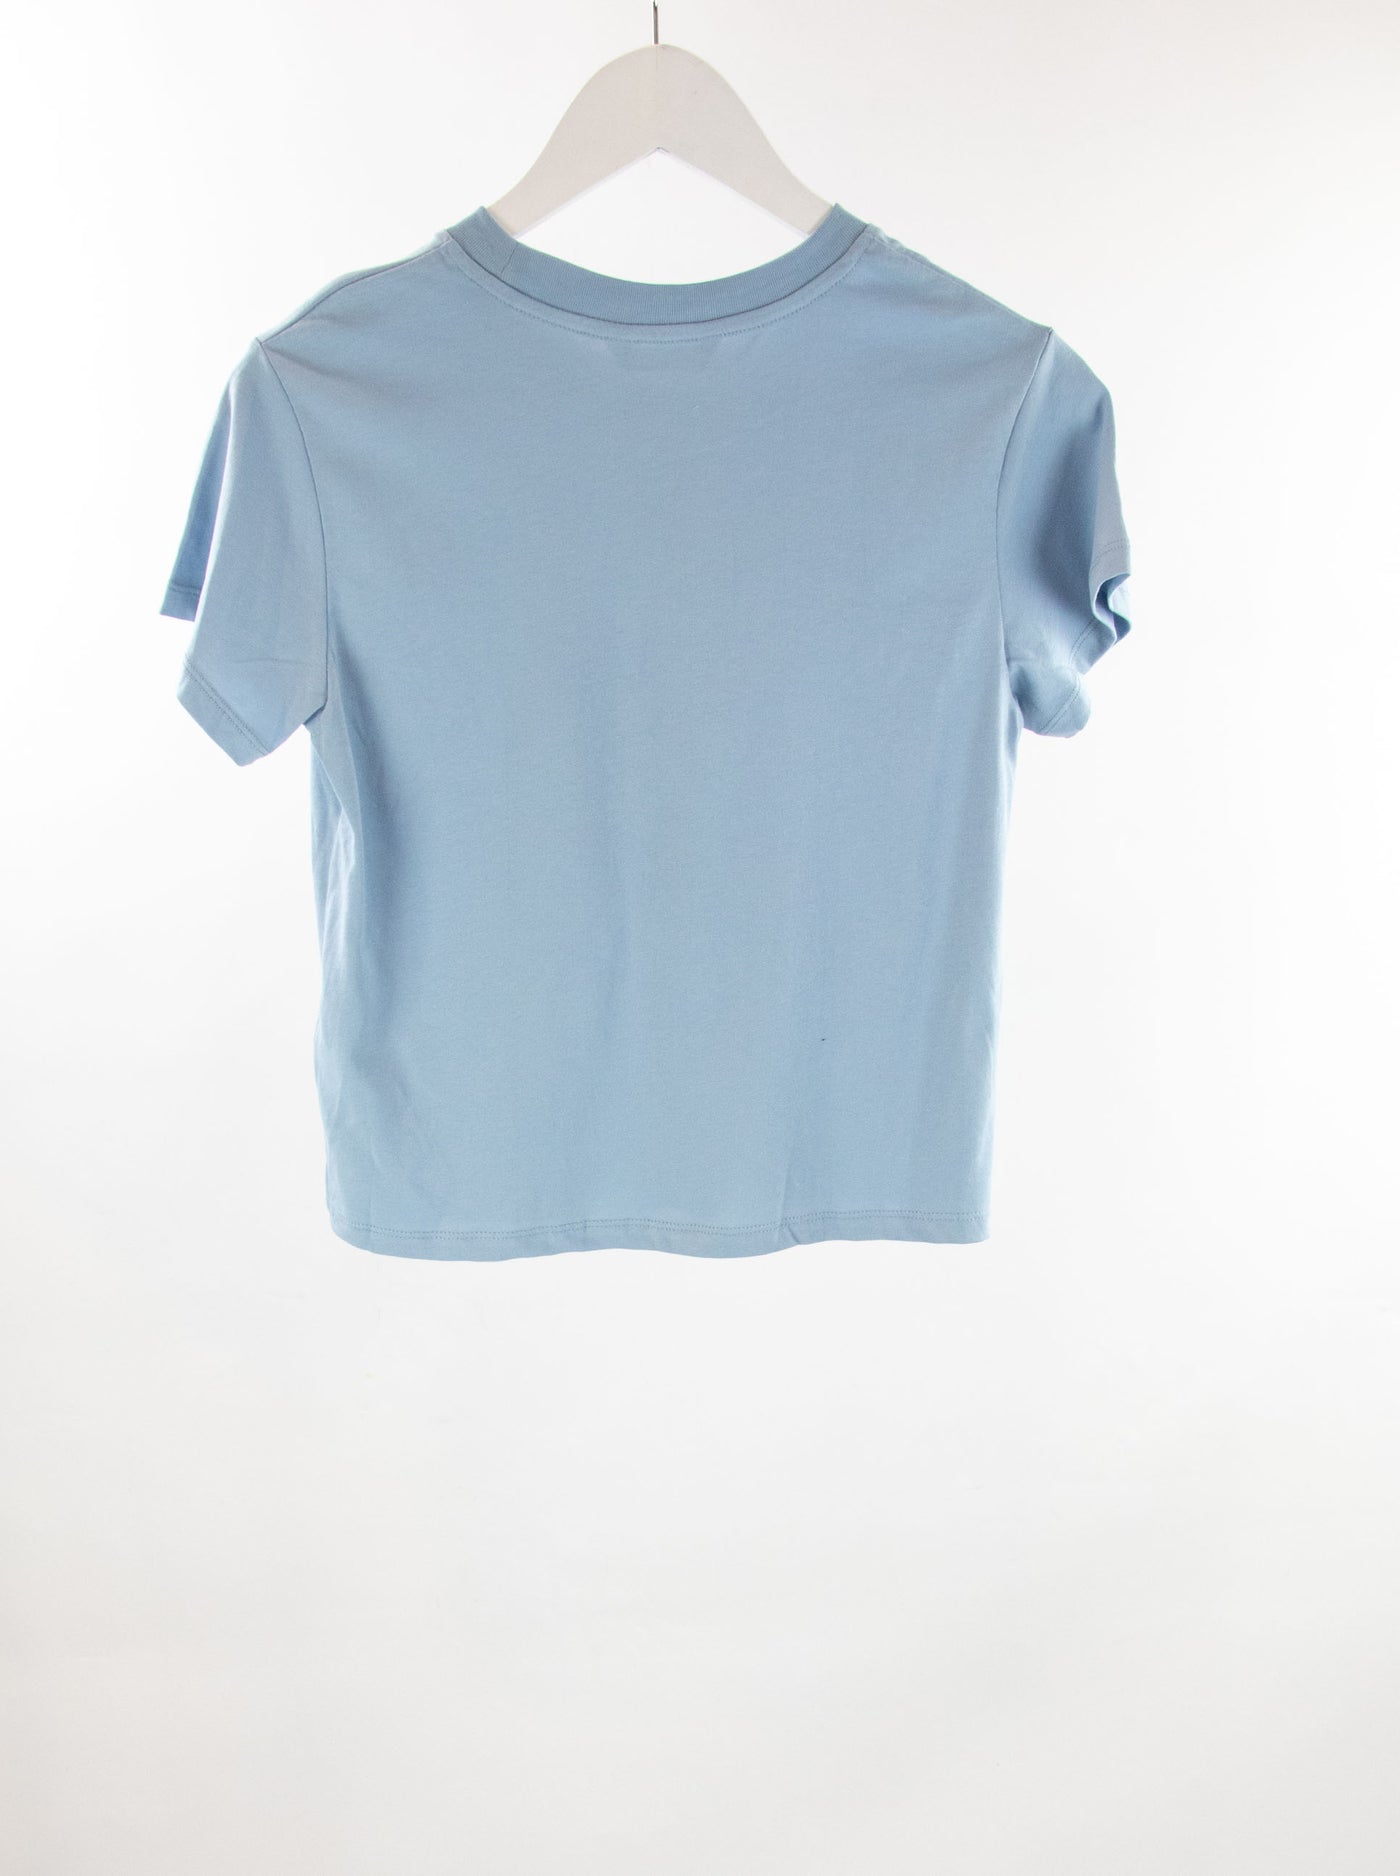 Camiseta azul estampada